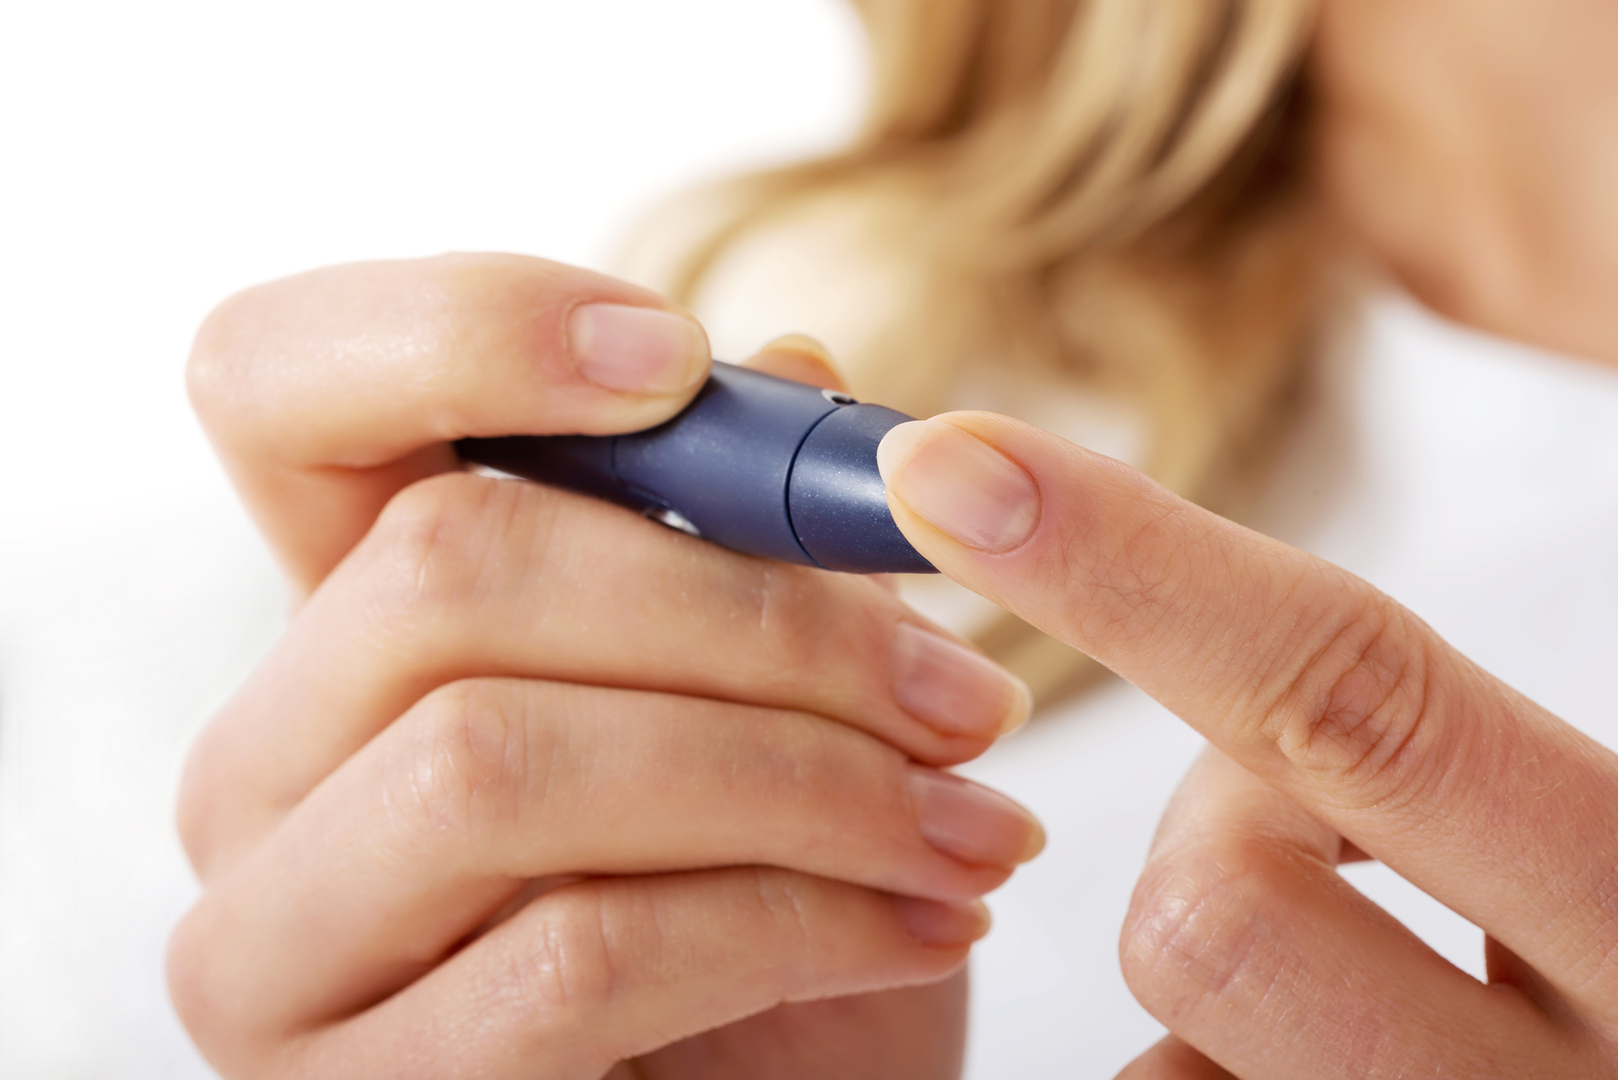 علامات تحذيرية للإصابة بمرض السكري يمكن رصدها في اليدين لا سيما الأظافر